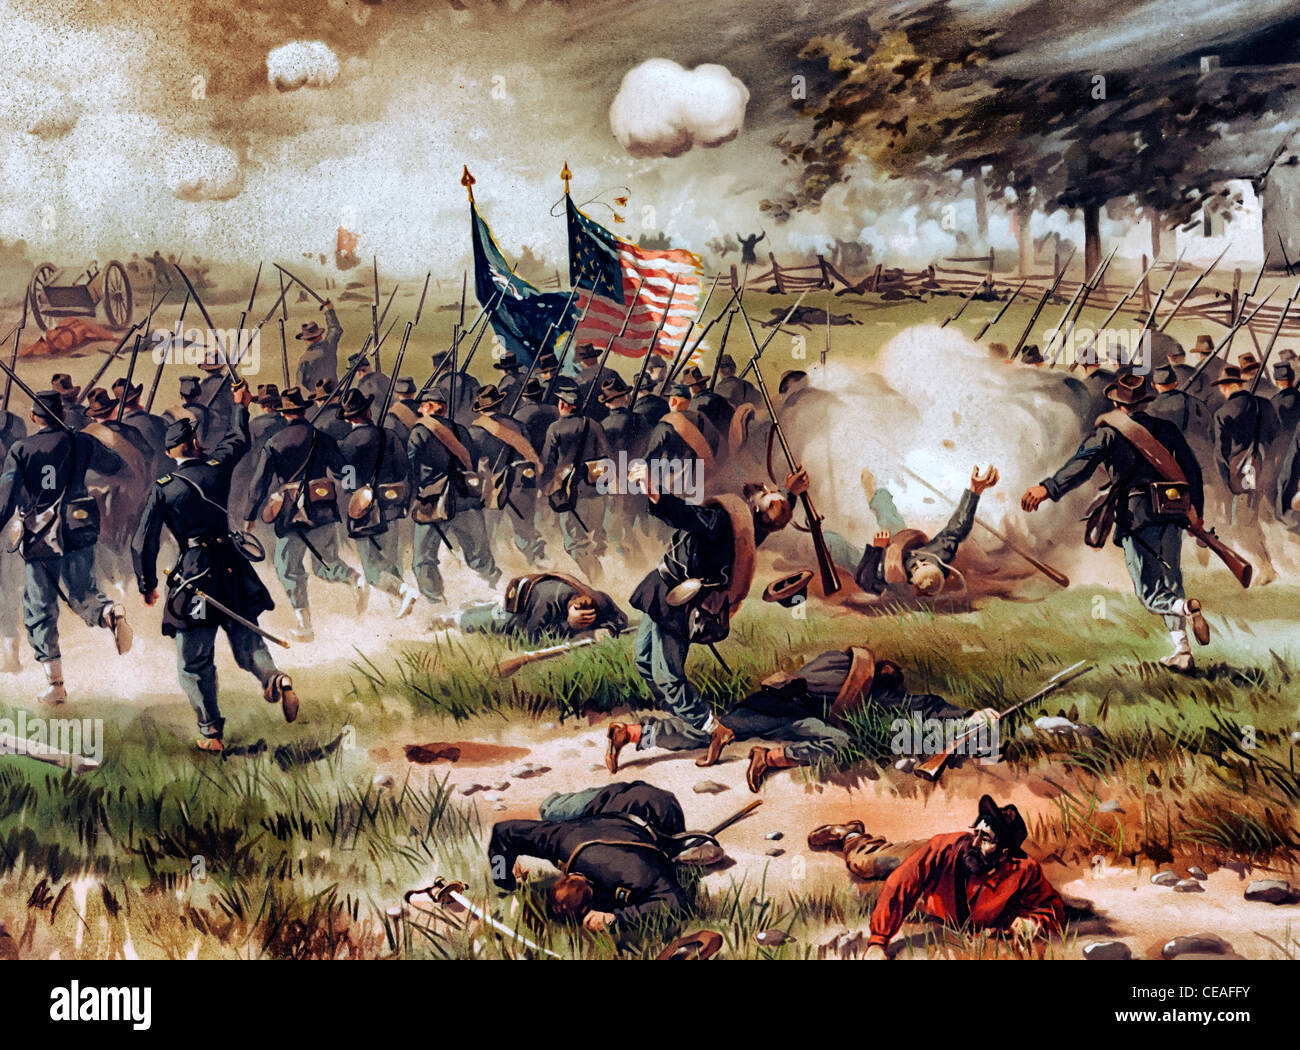 Schlacht von Antietam - USA Bürgerkrieg 1862 Stockfoto